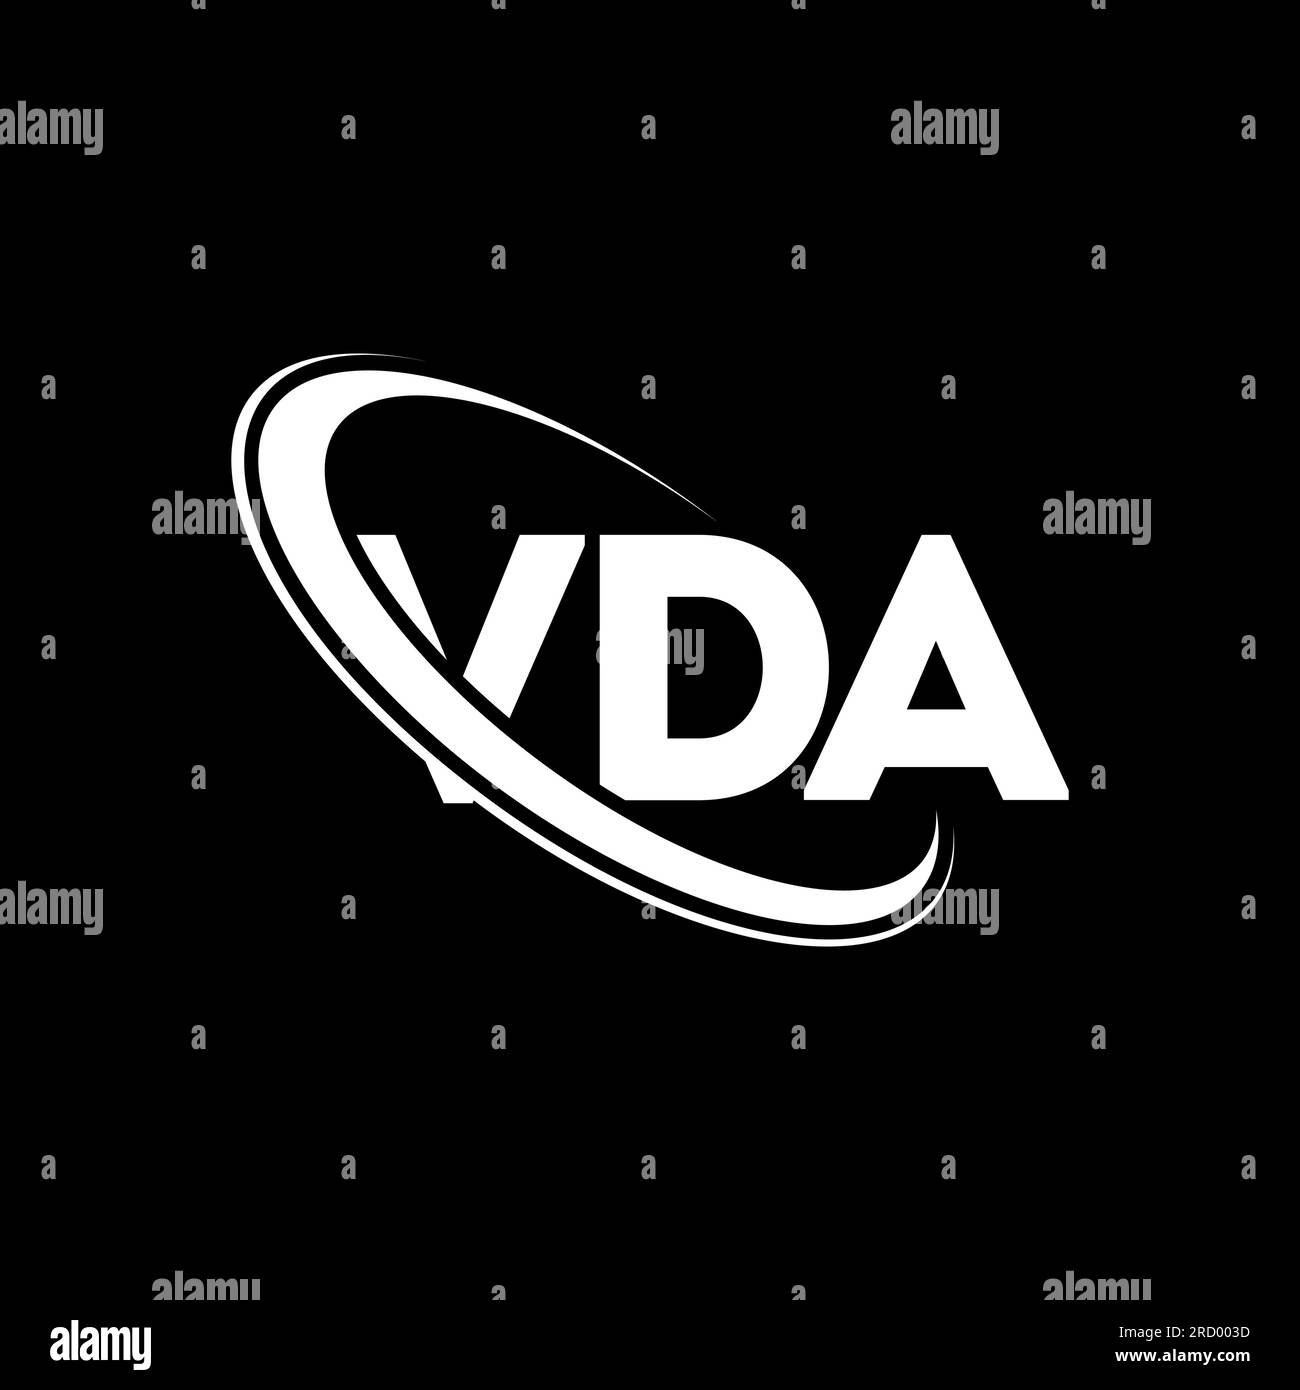 VDA-Logo. VDA-Brief. VDA-Logo-Design. Initialen VDA-Logo, verbunden mit Kreis und Monogramm-Logo in Großbuchstaben. VDA-Typografie für Technologie, Geschäfte Stock Vektor